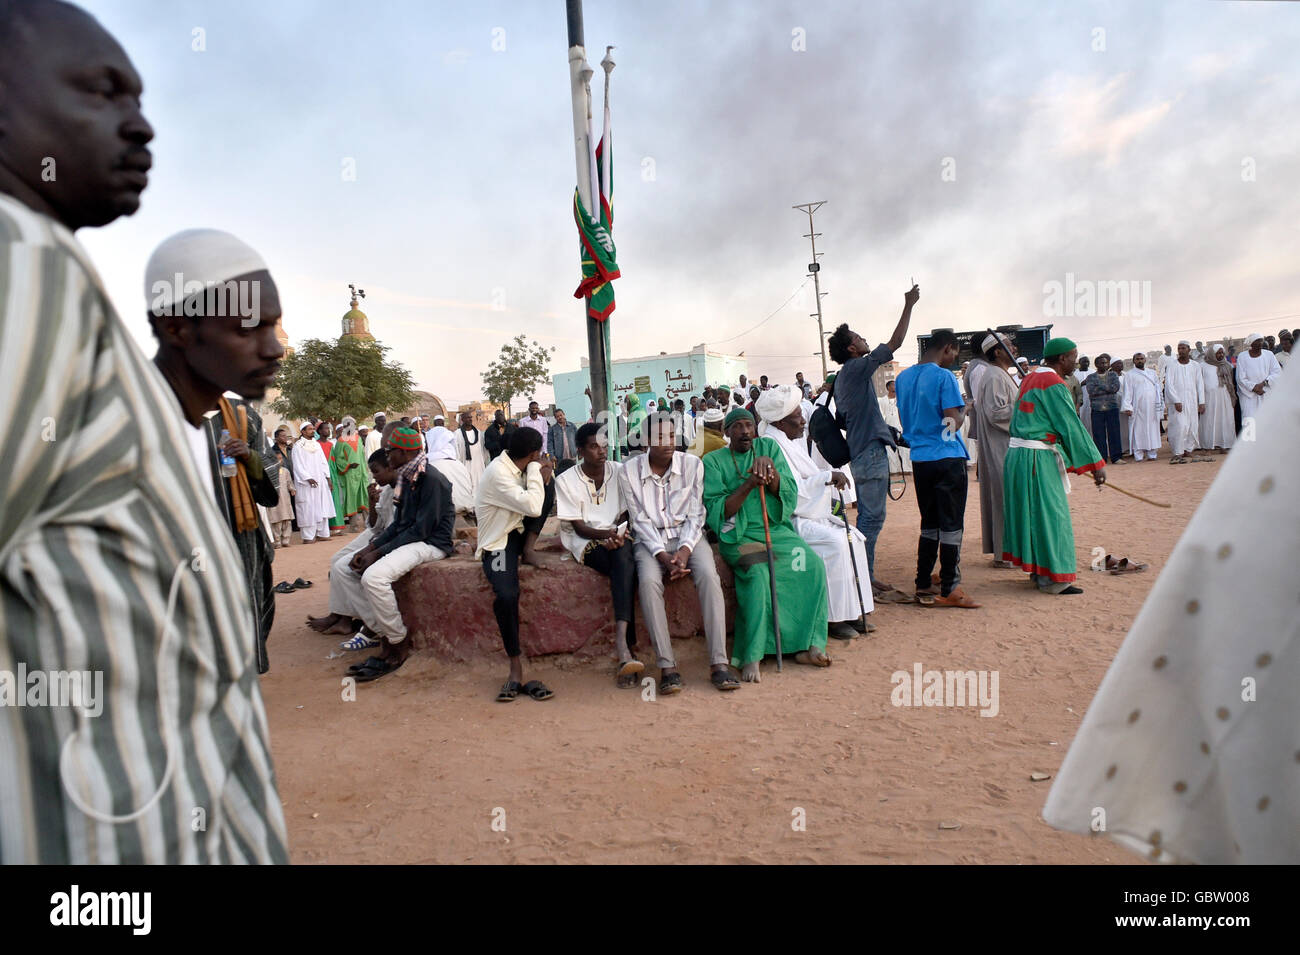 Africa, Sudan, Omdurman, Hamid El-Nil mosque, Halgt Zikr ceremony Stock Photo